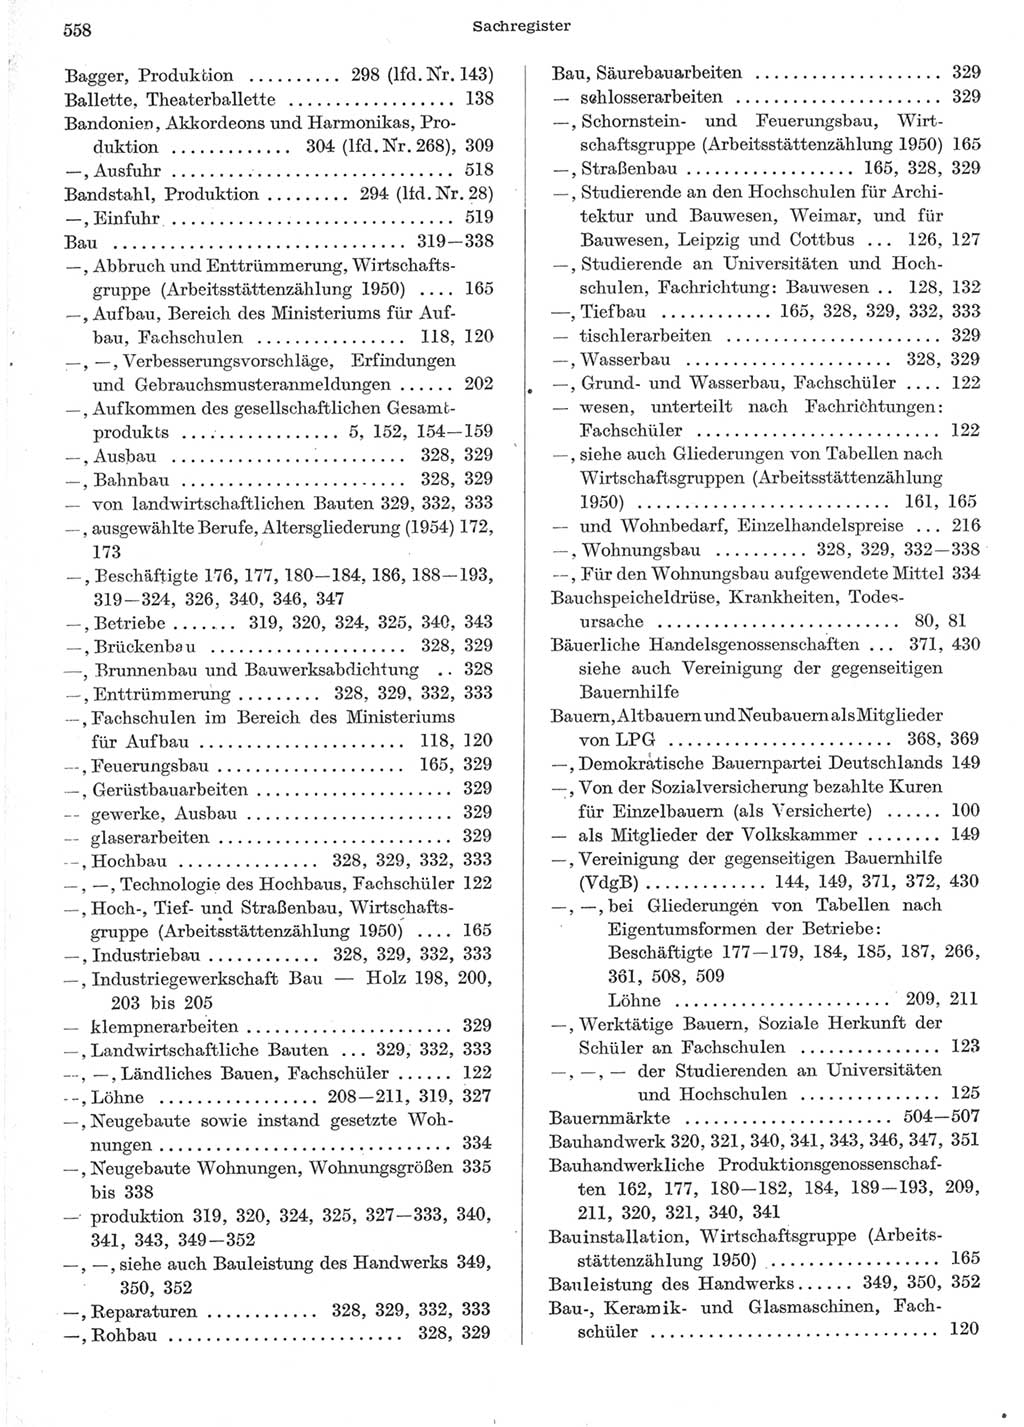 Statistisches Jahrbuch der Deutschen Demokratischen Republik (DDR) 1957, Seite 558 (Stat. Jb. DDR 1957, S. 558)